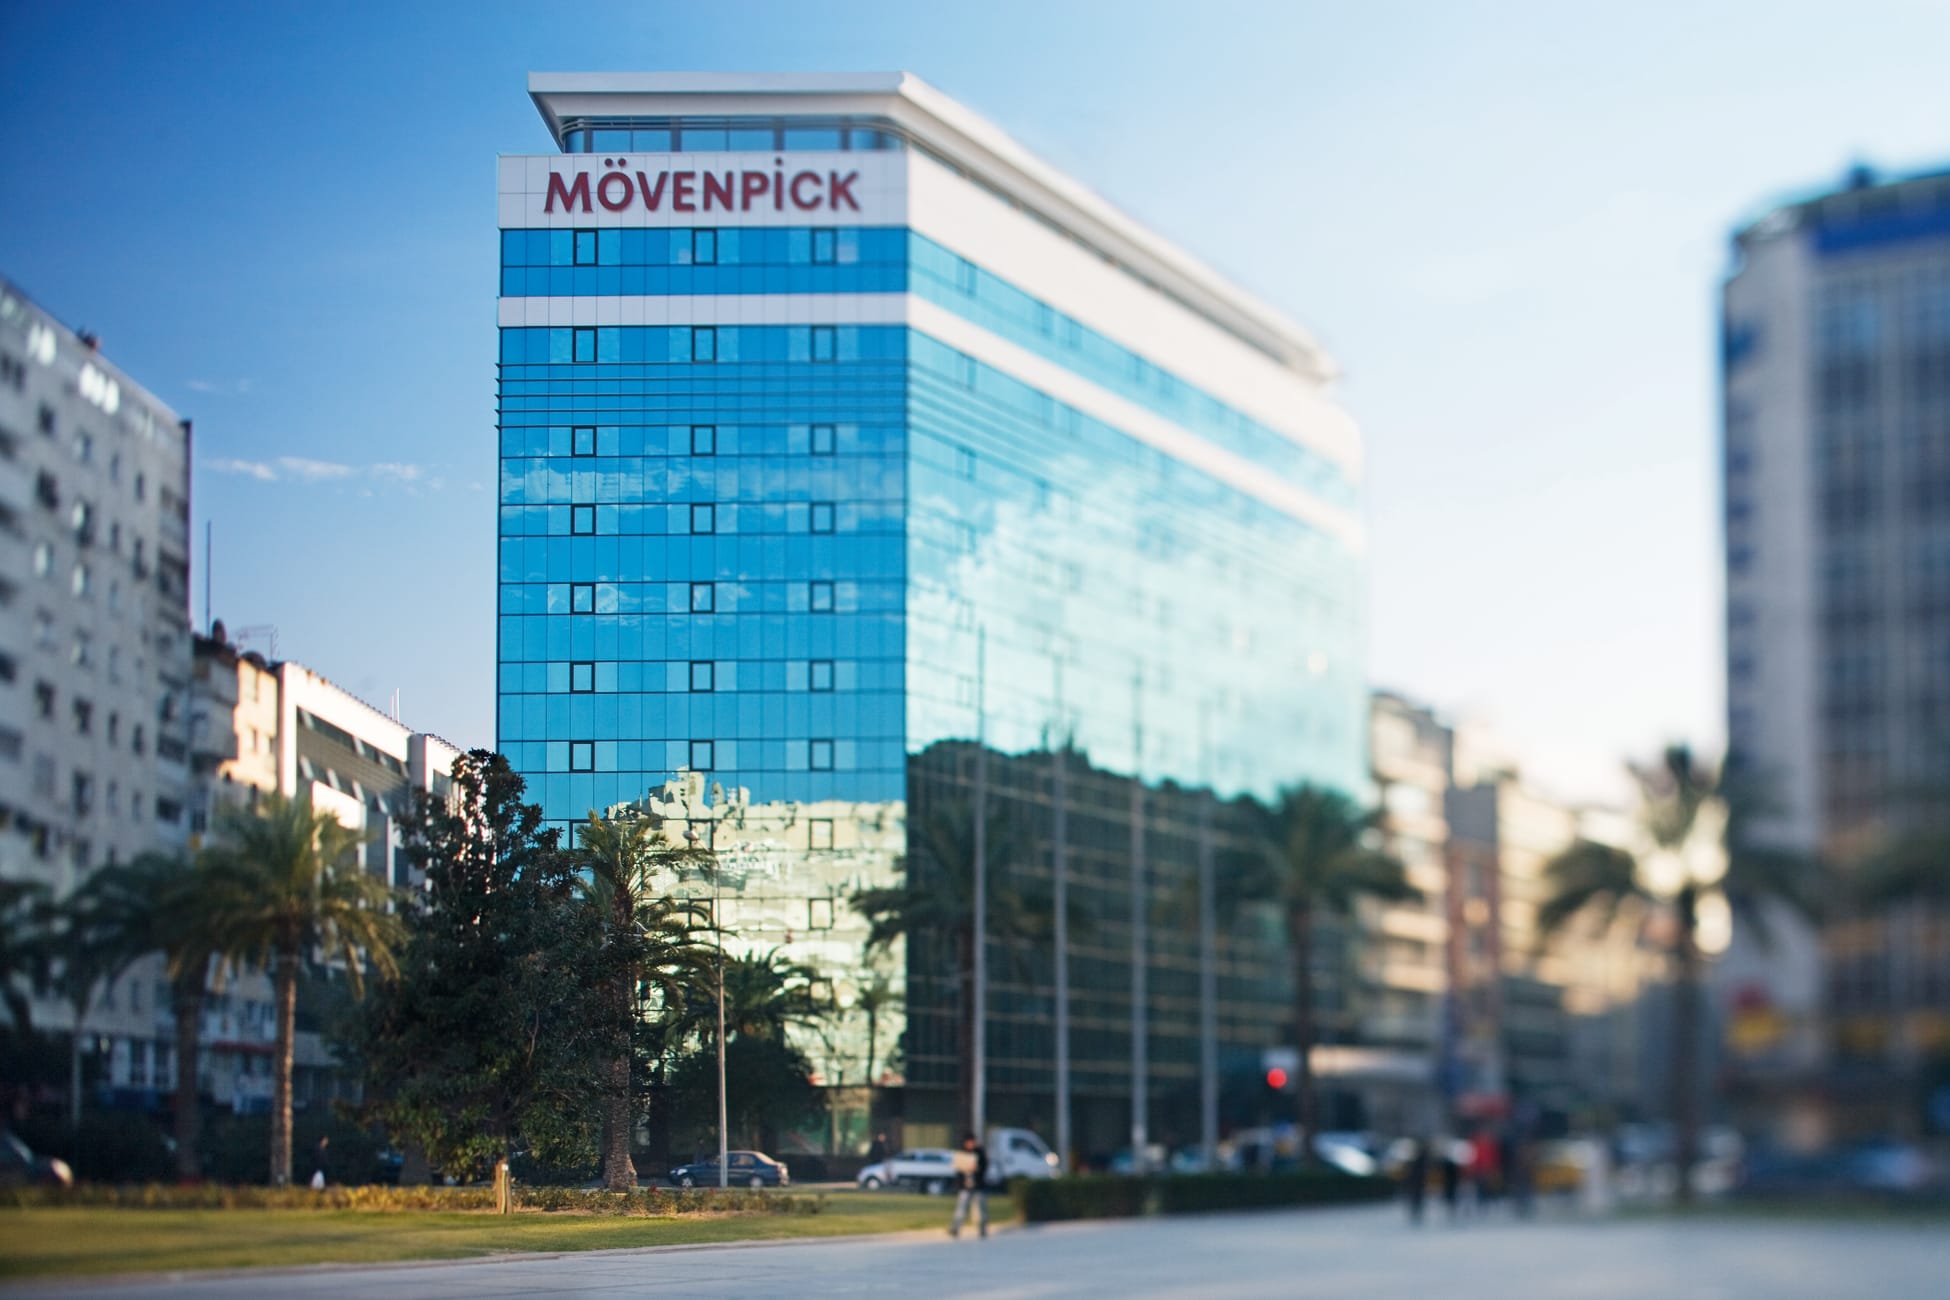 Mowenpick Hotel